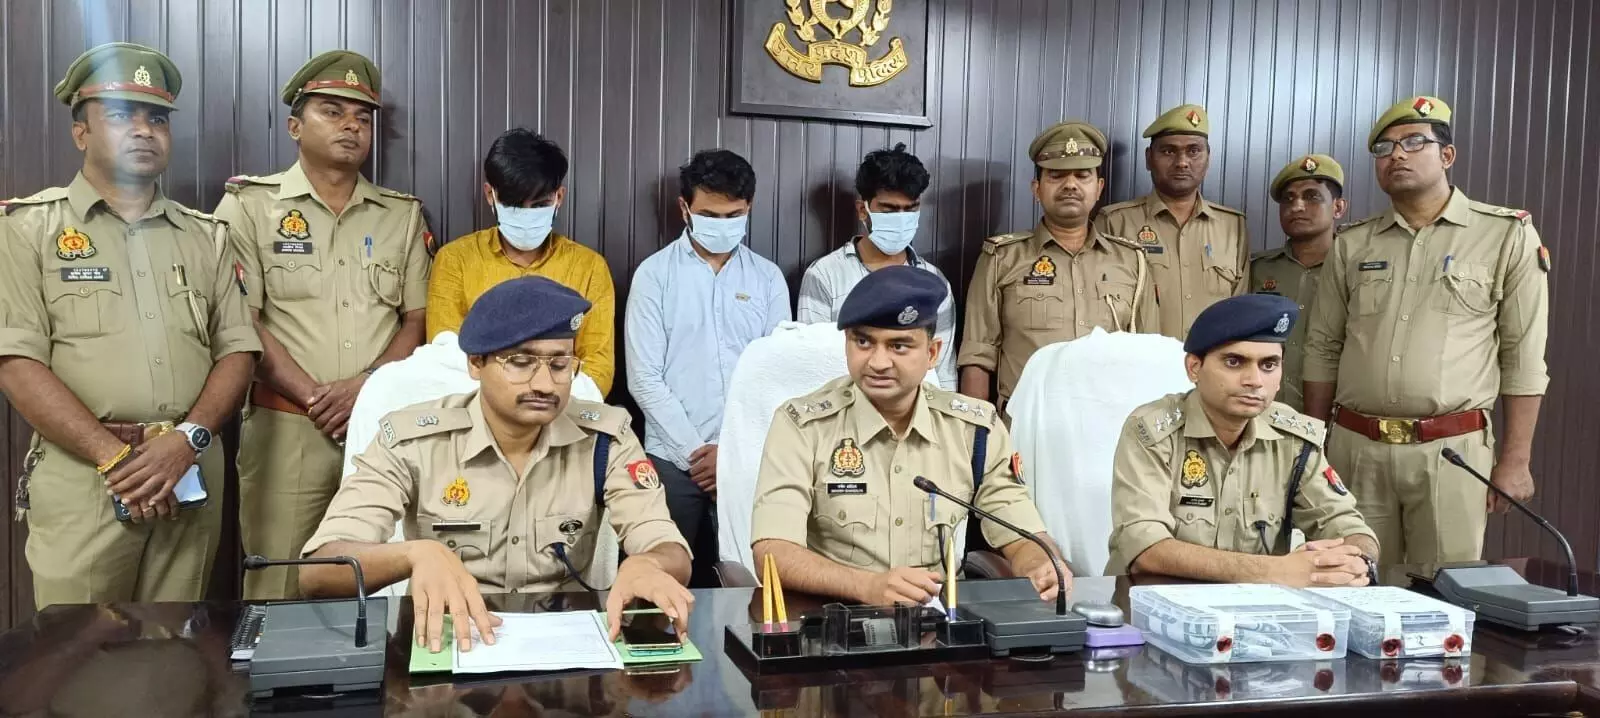 वाराणसी: बडागांव में 60 लाख रुपए के हेरोइन के साथ 3 तस्कर गिरफ्तार